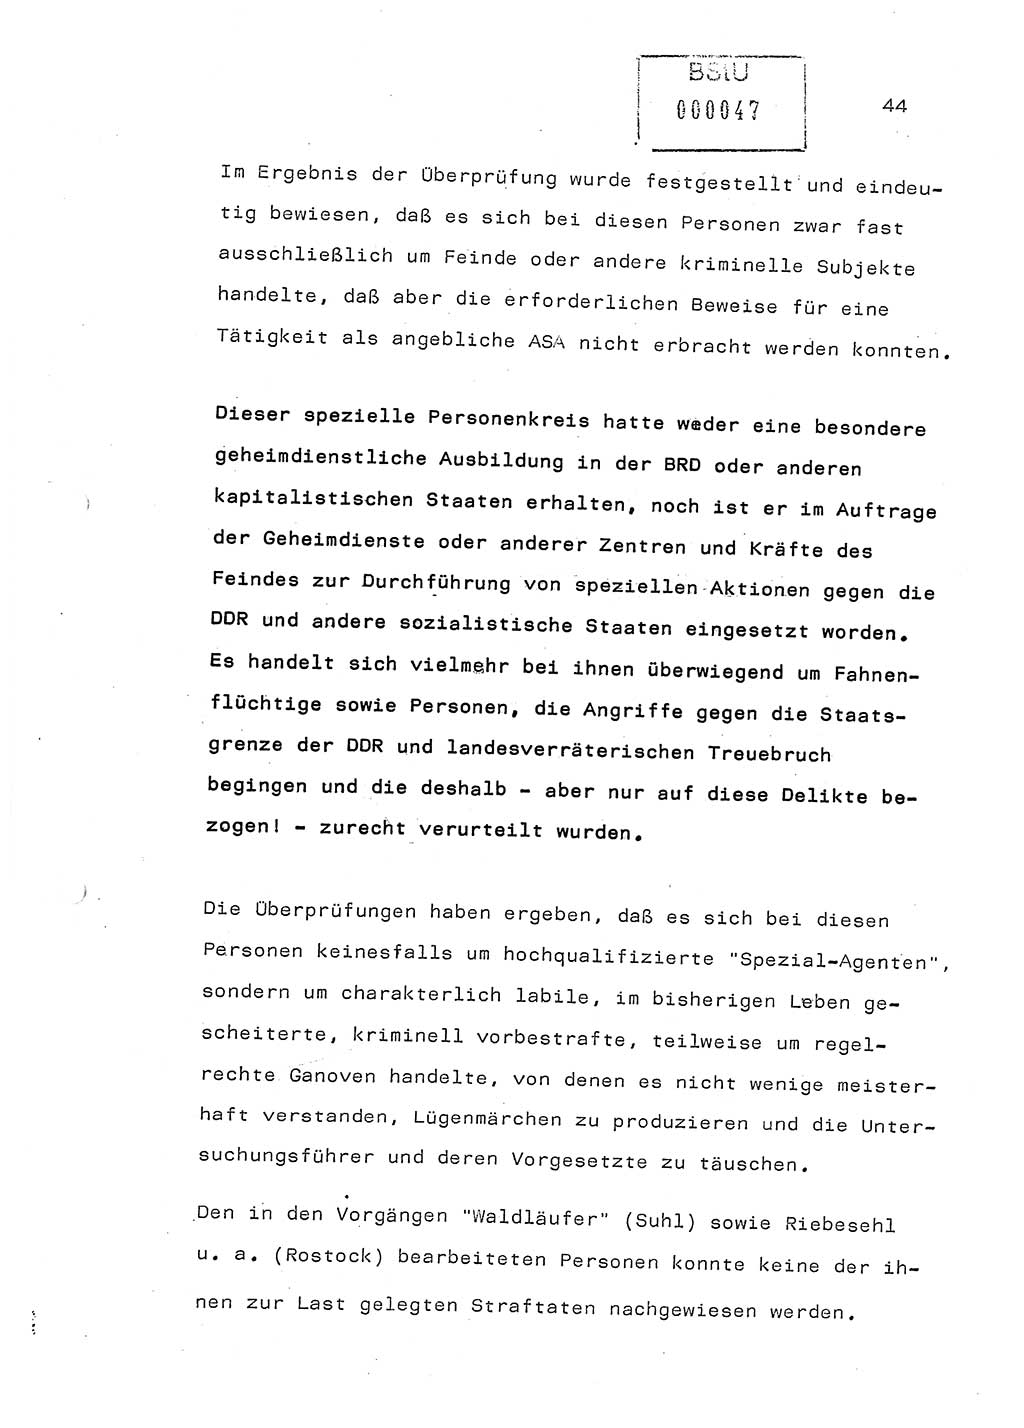 Referat (Generaloberst Erich Mielke) auf der Zentralen Dienstkonferenz am 24.5.1979 [Ministerium für Staatssicherheit (MfS), Deutsche Demokratische Republik (DDR), Der Minister], Berlin 1979, Seite 44 (Ref. DK DDR MfS Min. /79 1979, S. 44)